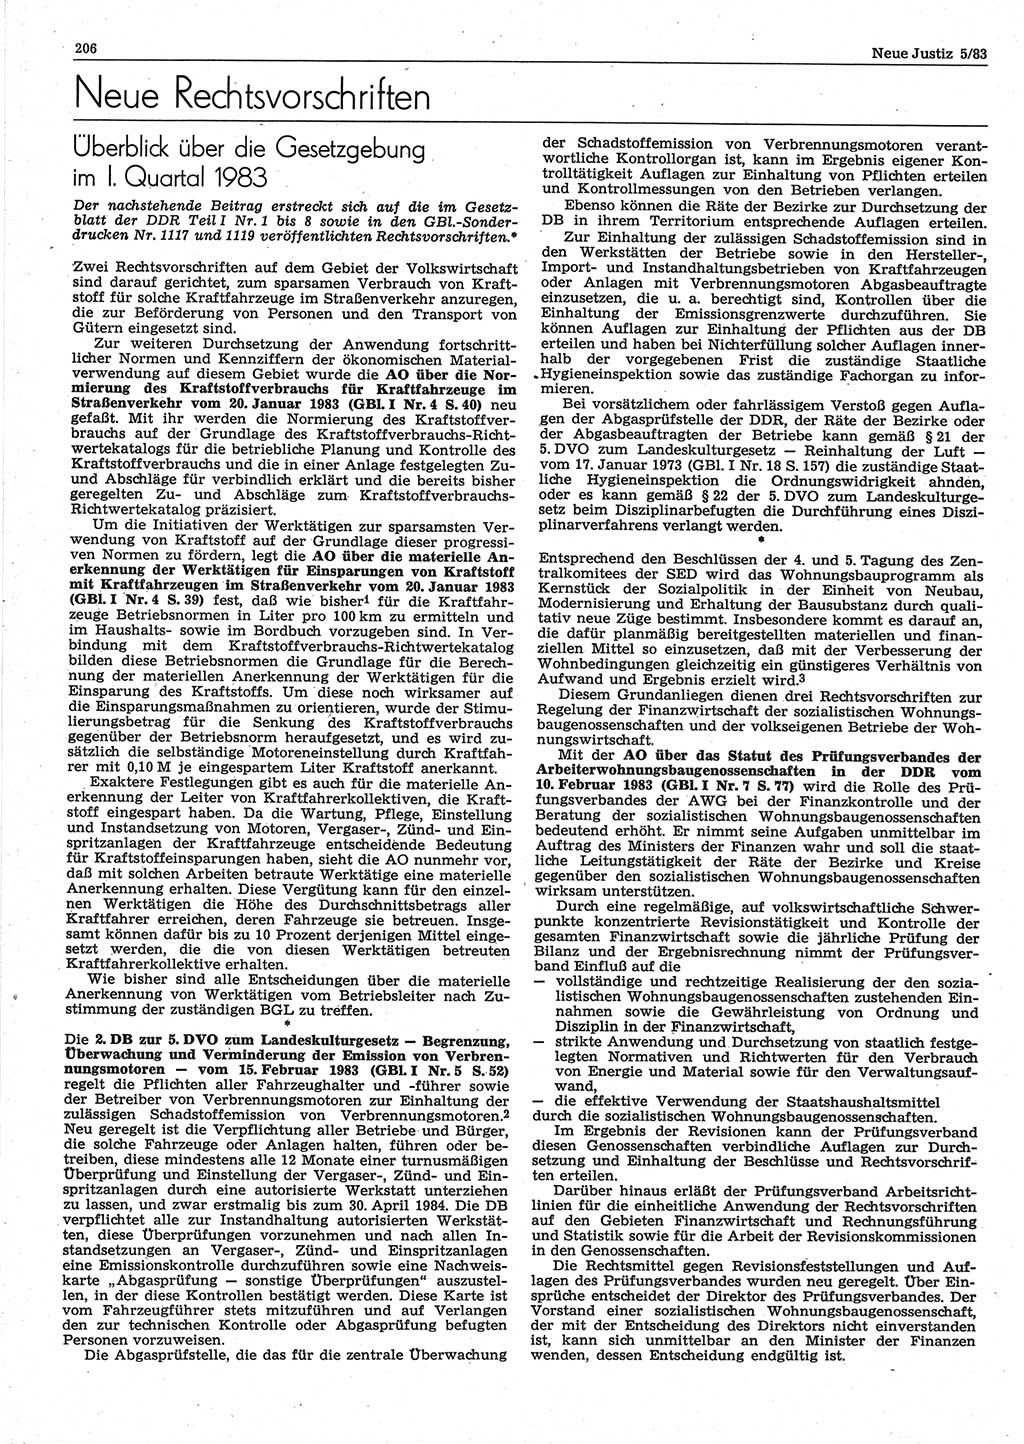 Neue Justiz (NJ), Zeitschrift für sozialistisches Recht und Gesetzlichkeit [Deutsche Demokratische Republik (DDR)], 37. Jahrgang 1983, Seite 206 (NJ DDR 1983, S. 206)